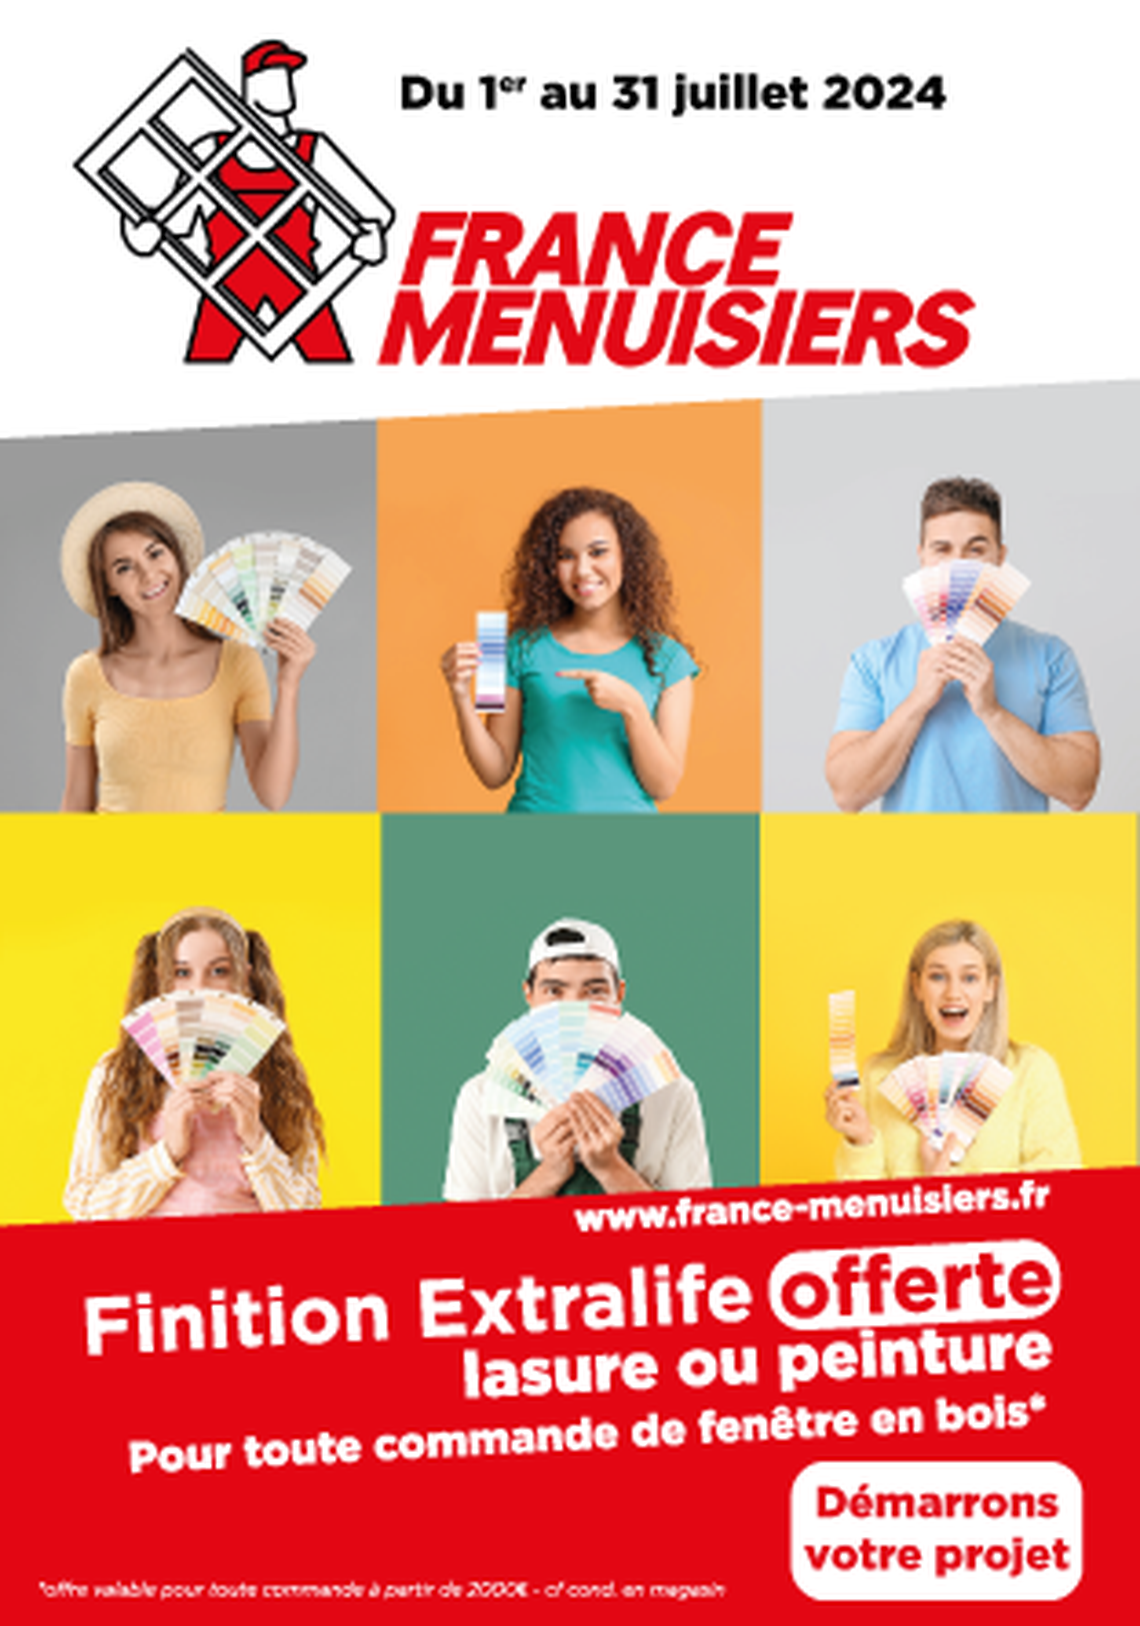 FRANCE MENUISIERS La Rochelle - Finition Extralife Offerte